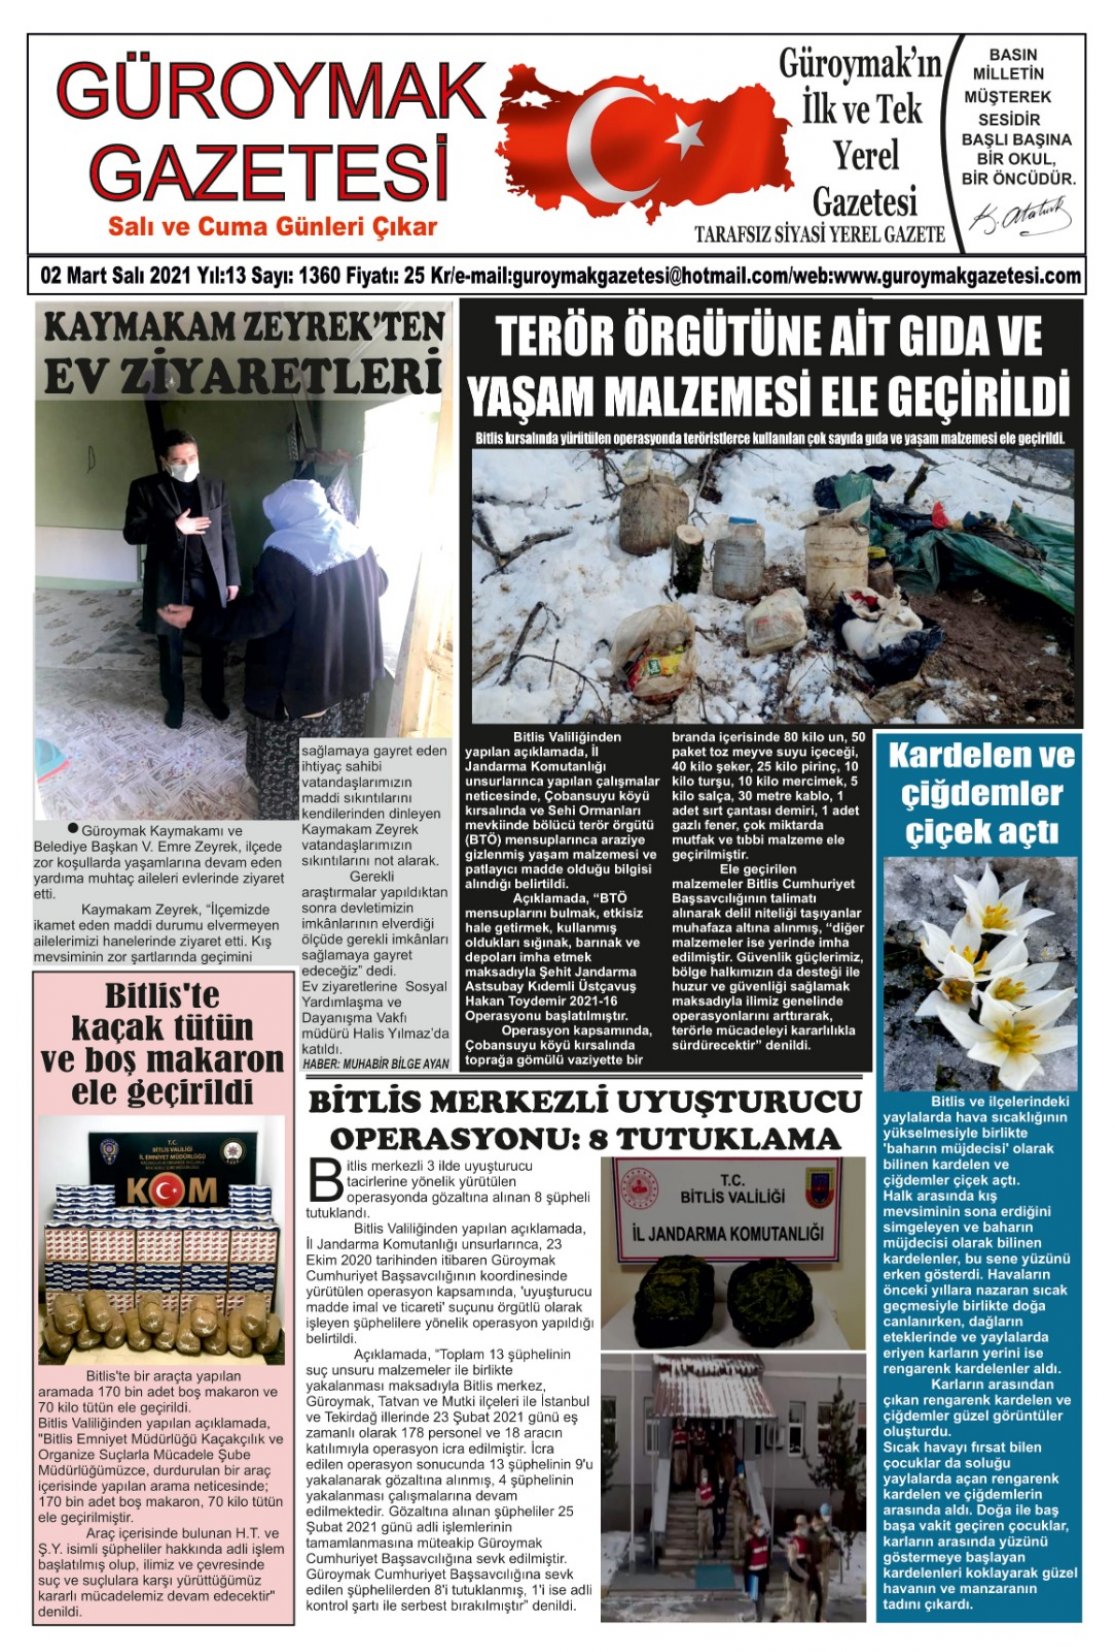 Güroymak Gazetesi 88DF2784-7100-4FBC-9140-DE60AC902B4C.jpeg Sayılı Gazete Küpürü